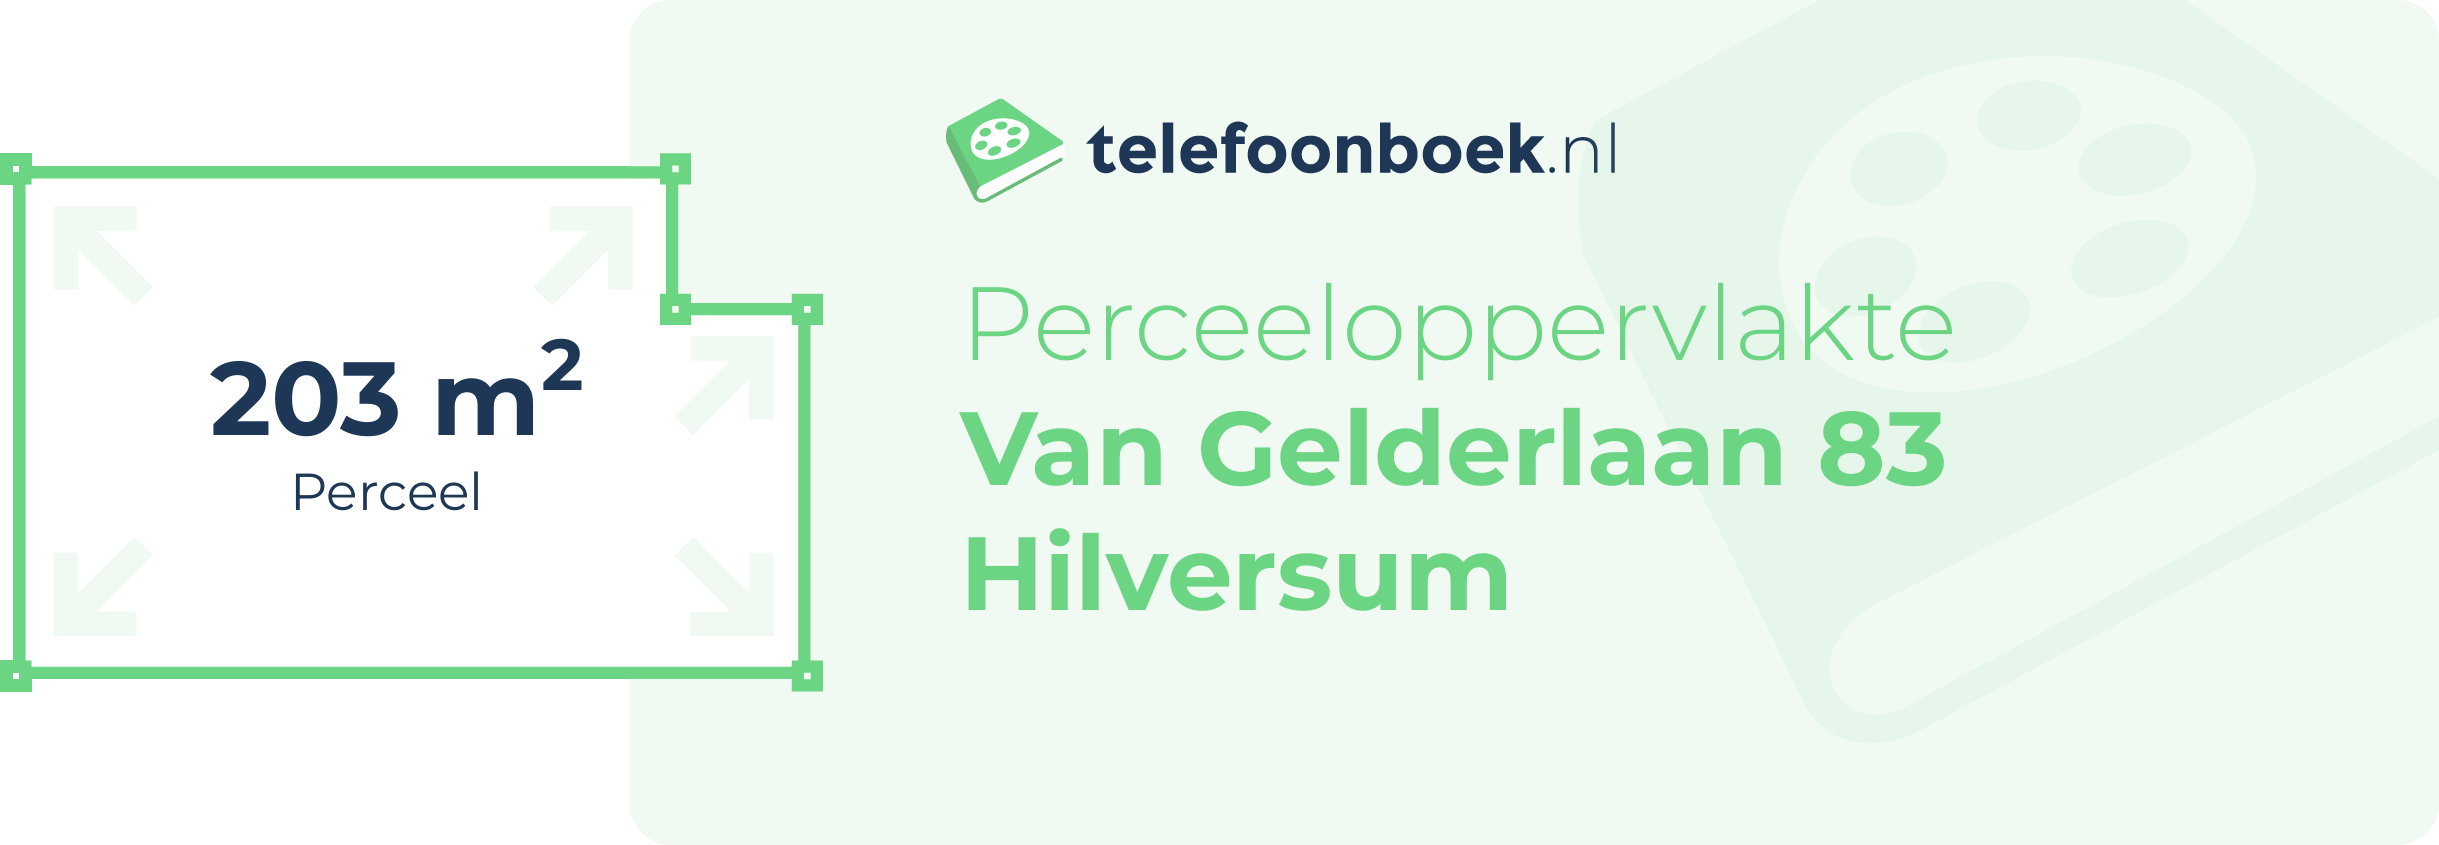 Perceeloppervlakte Van Gelderlaan 83 Hilversum